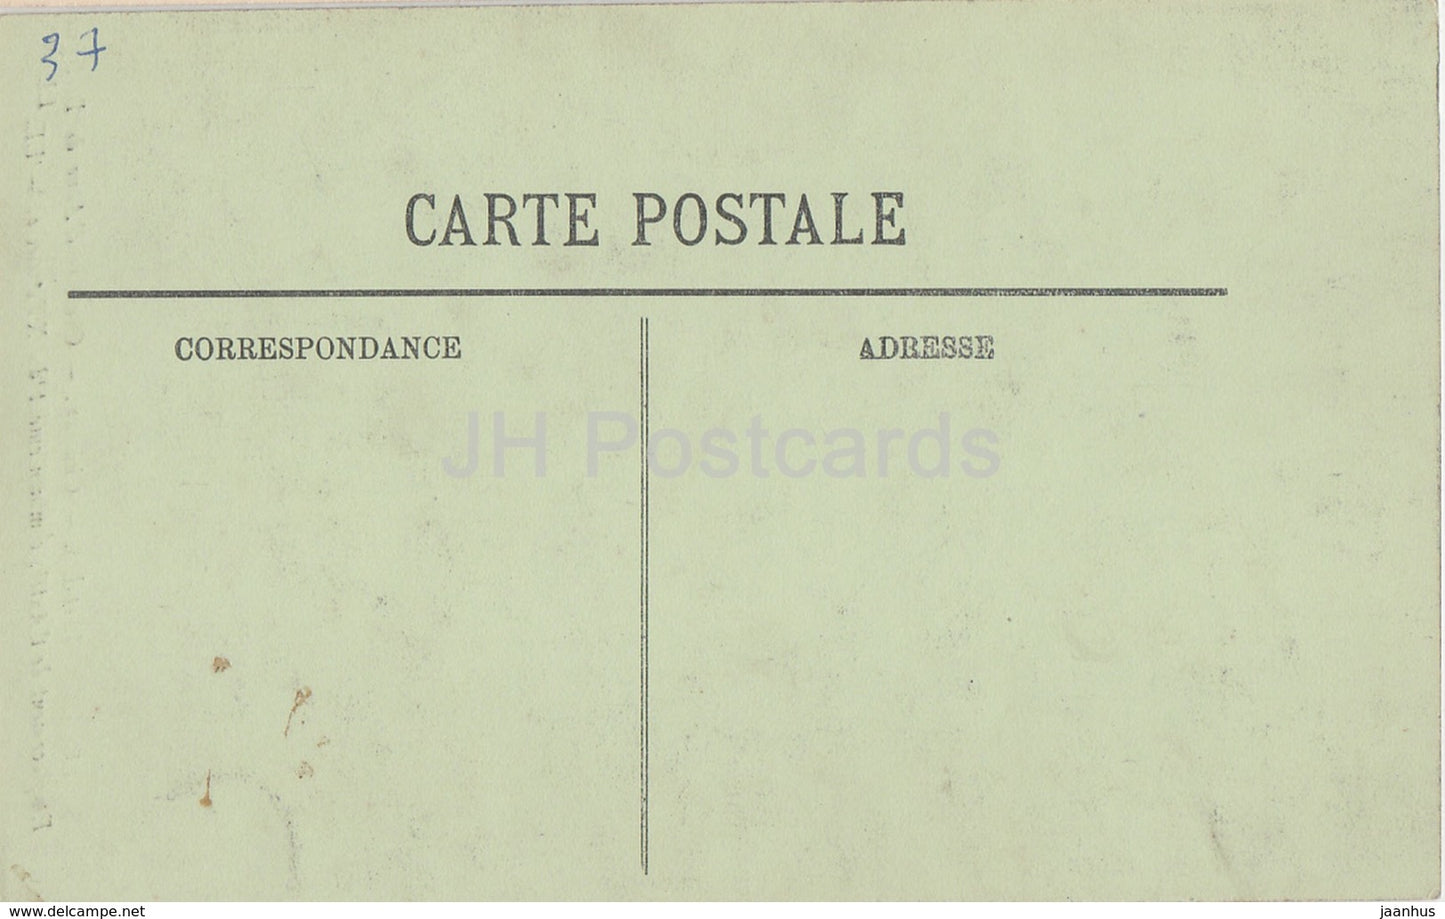 Loches - Chateau - Oratoire d'Anne de Bretagne - Emplacement de l'Autel - castle - 85 - old postcard - France - unused